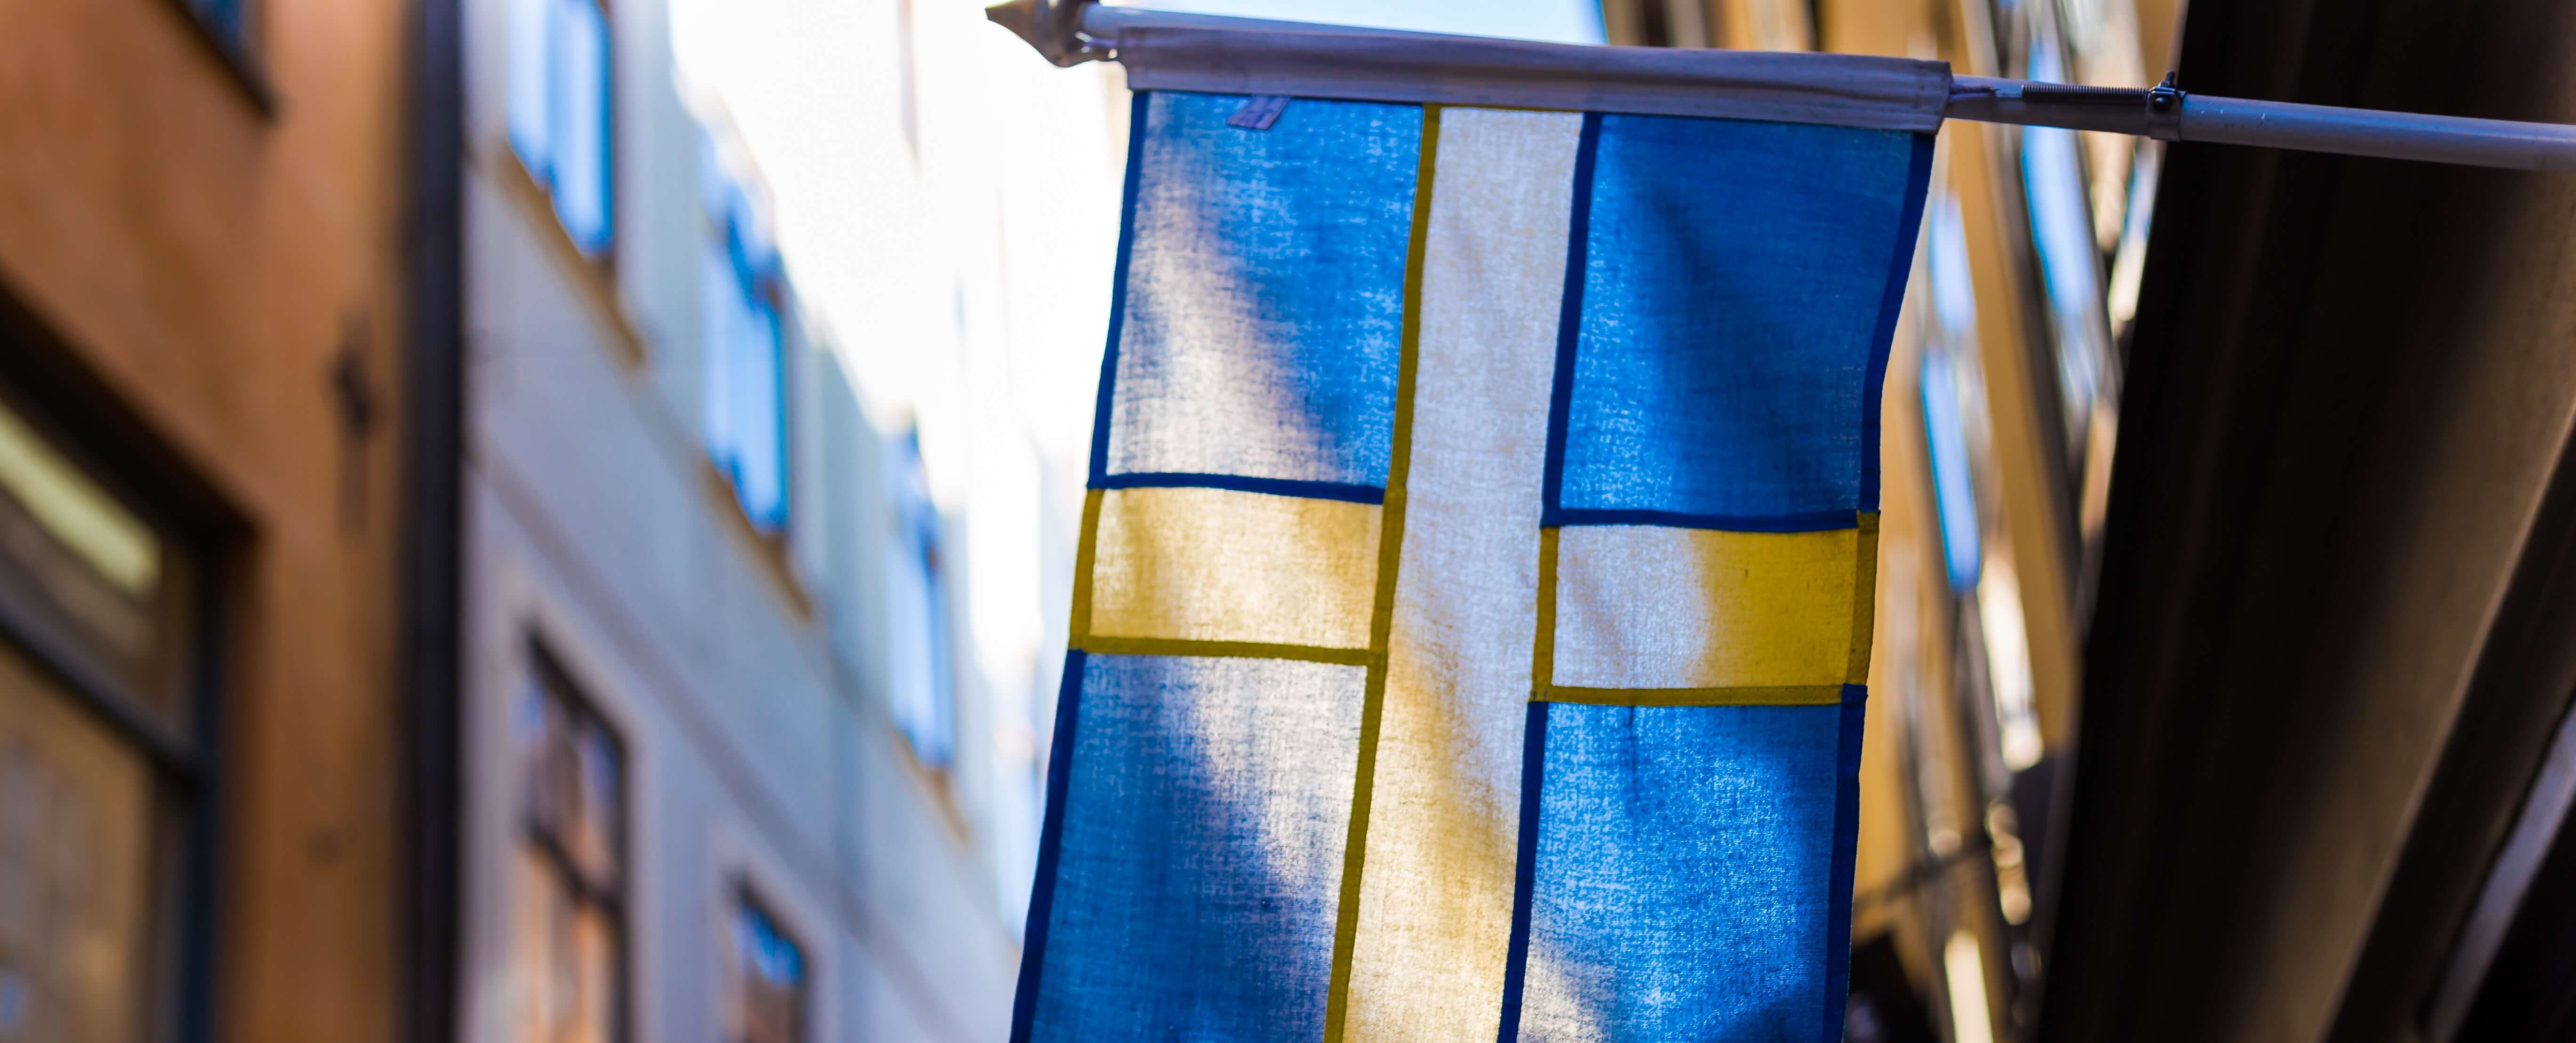 Sweden_flag